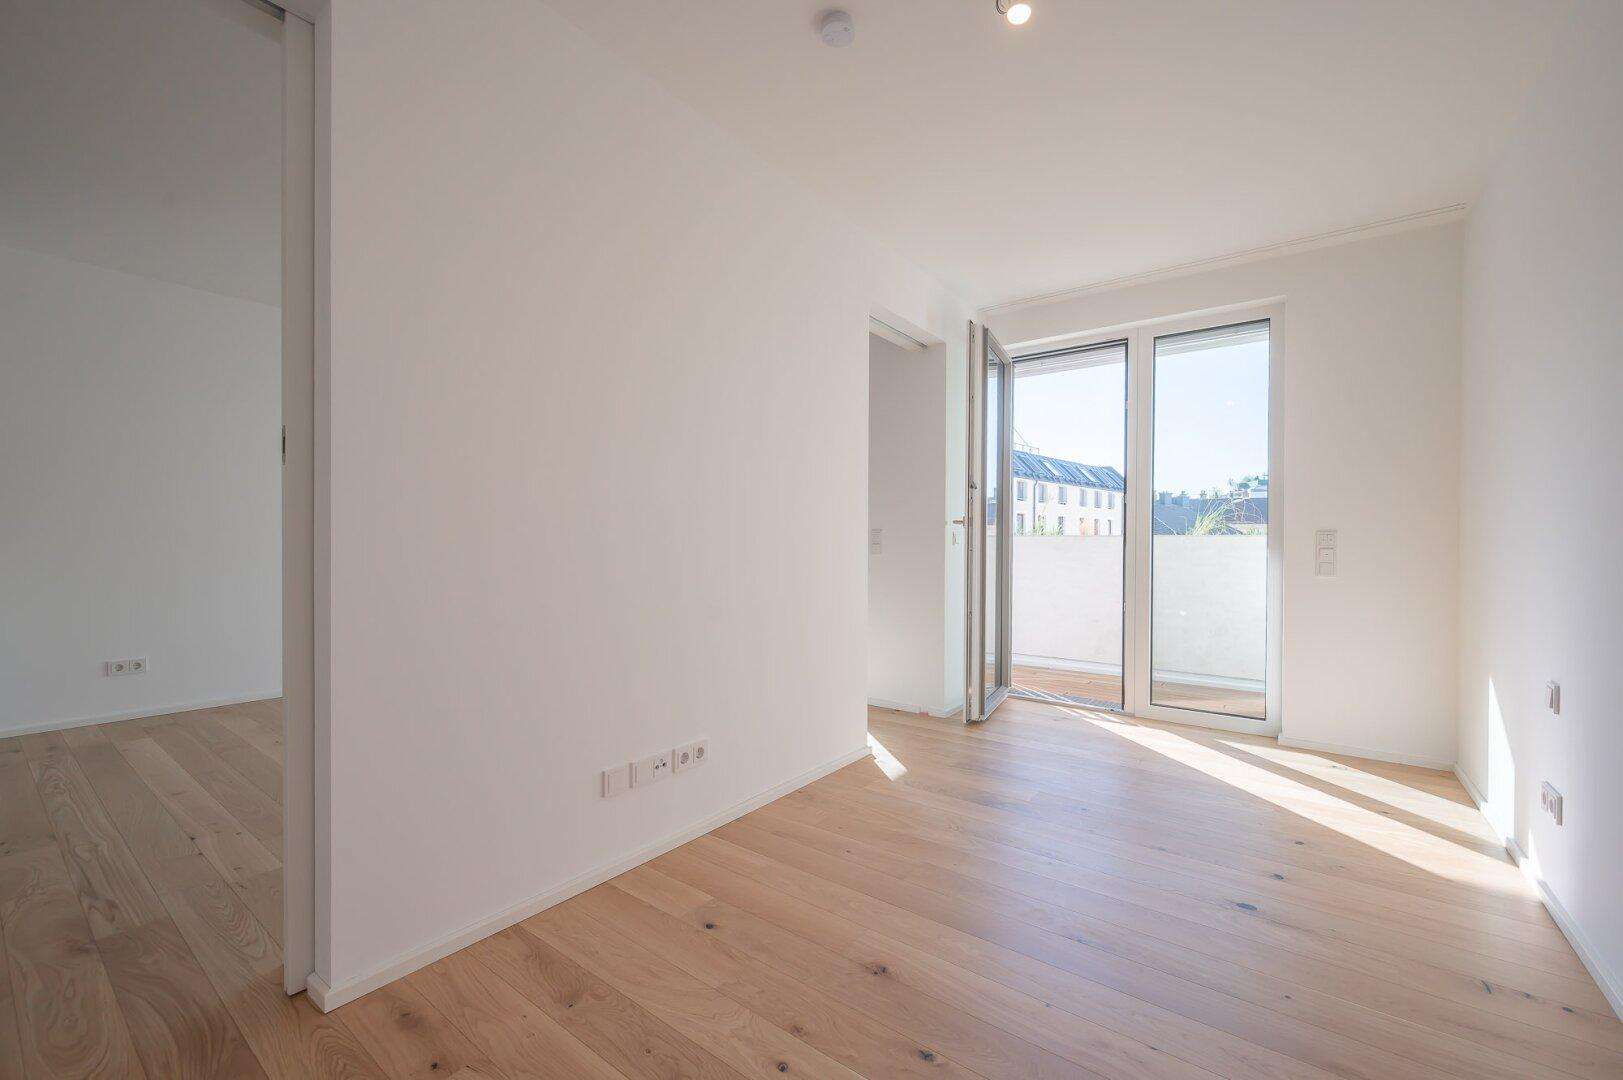 Projekt Schön102: südseitige 2 Zimmer Wohnung mit Loggia im 3.OG - ab 1.11 - Erstbezug